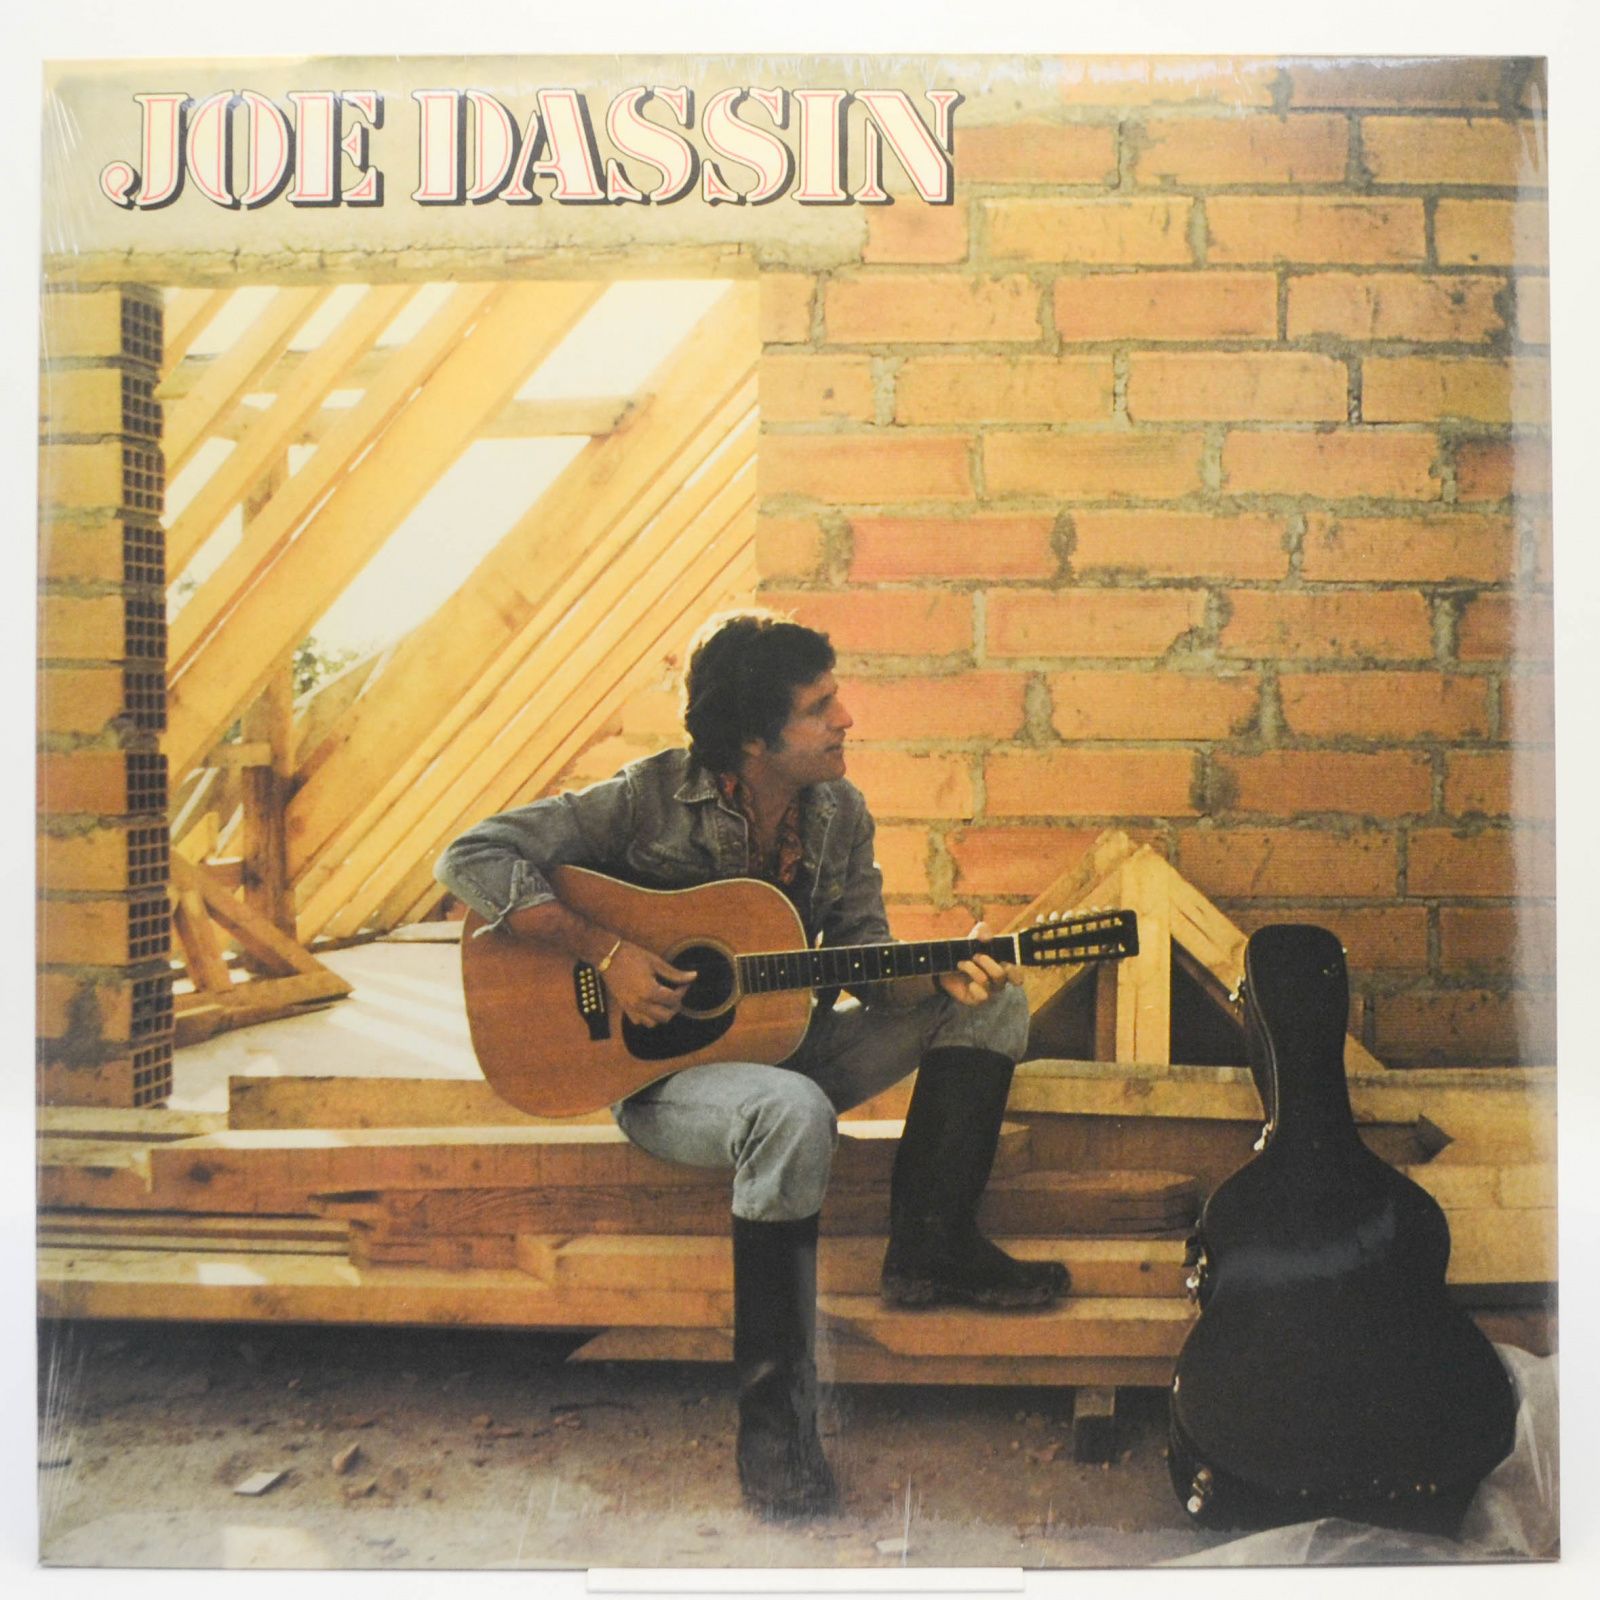 Joe Dassin — Joe Dassin, 1975